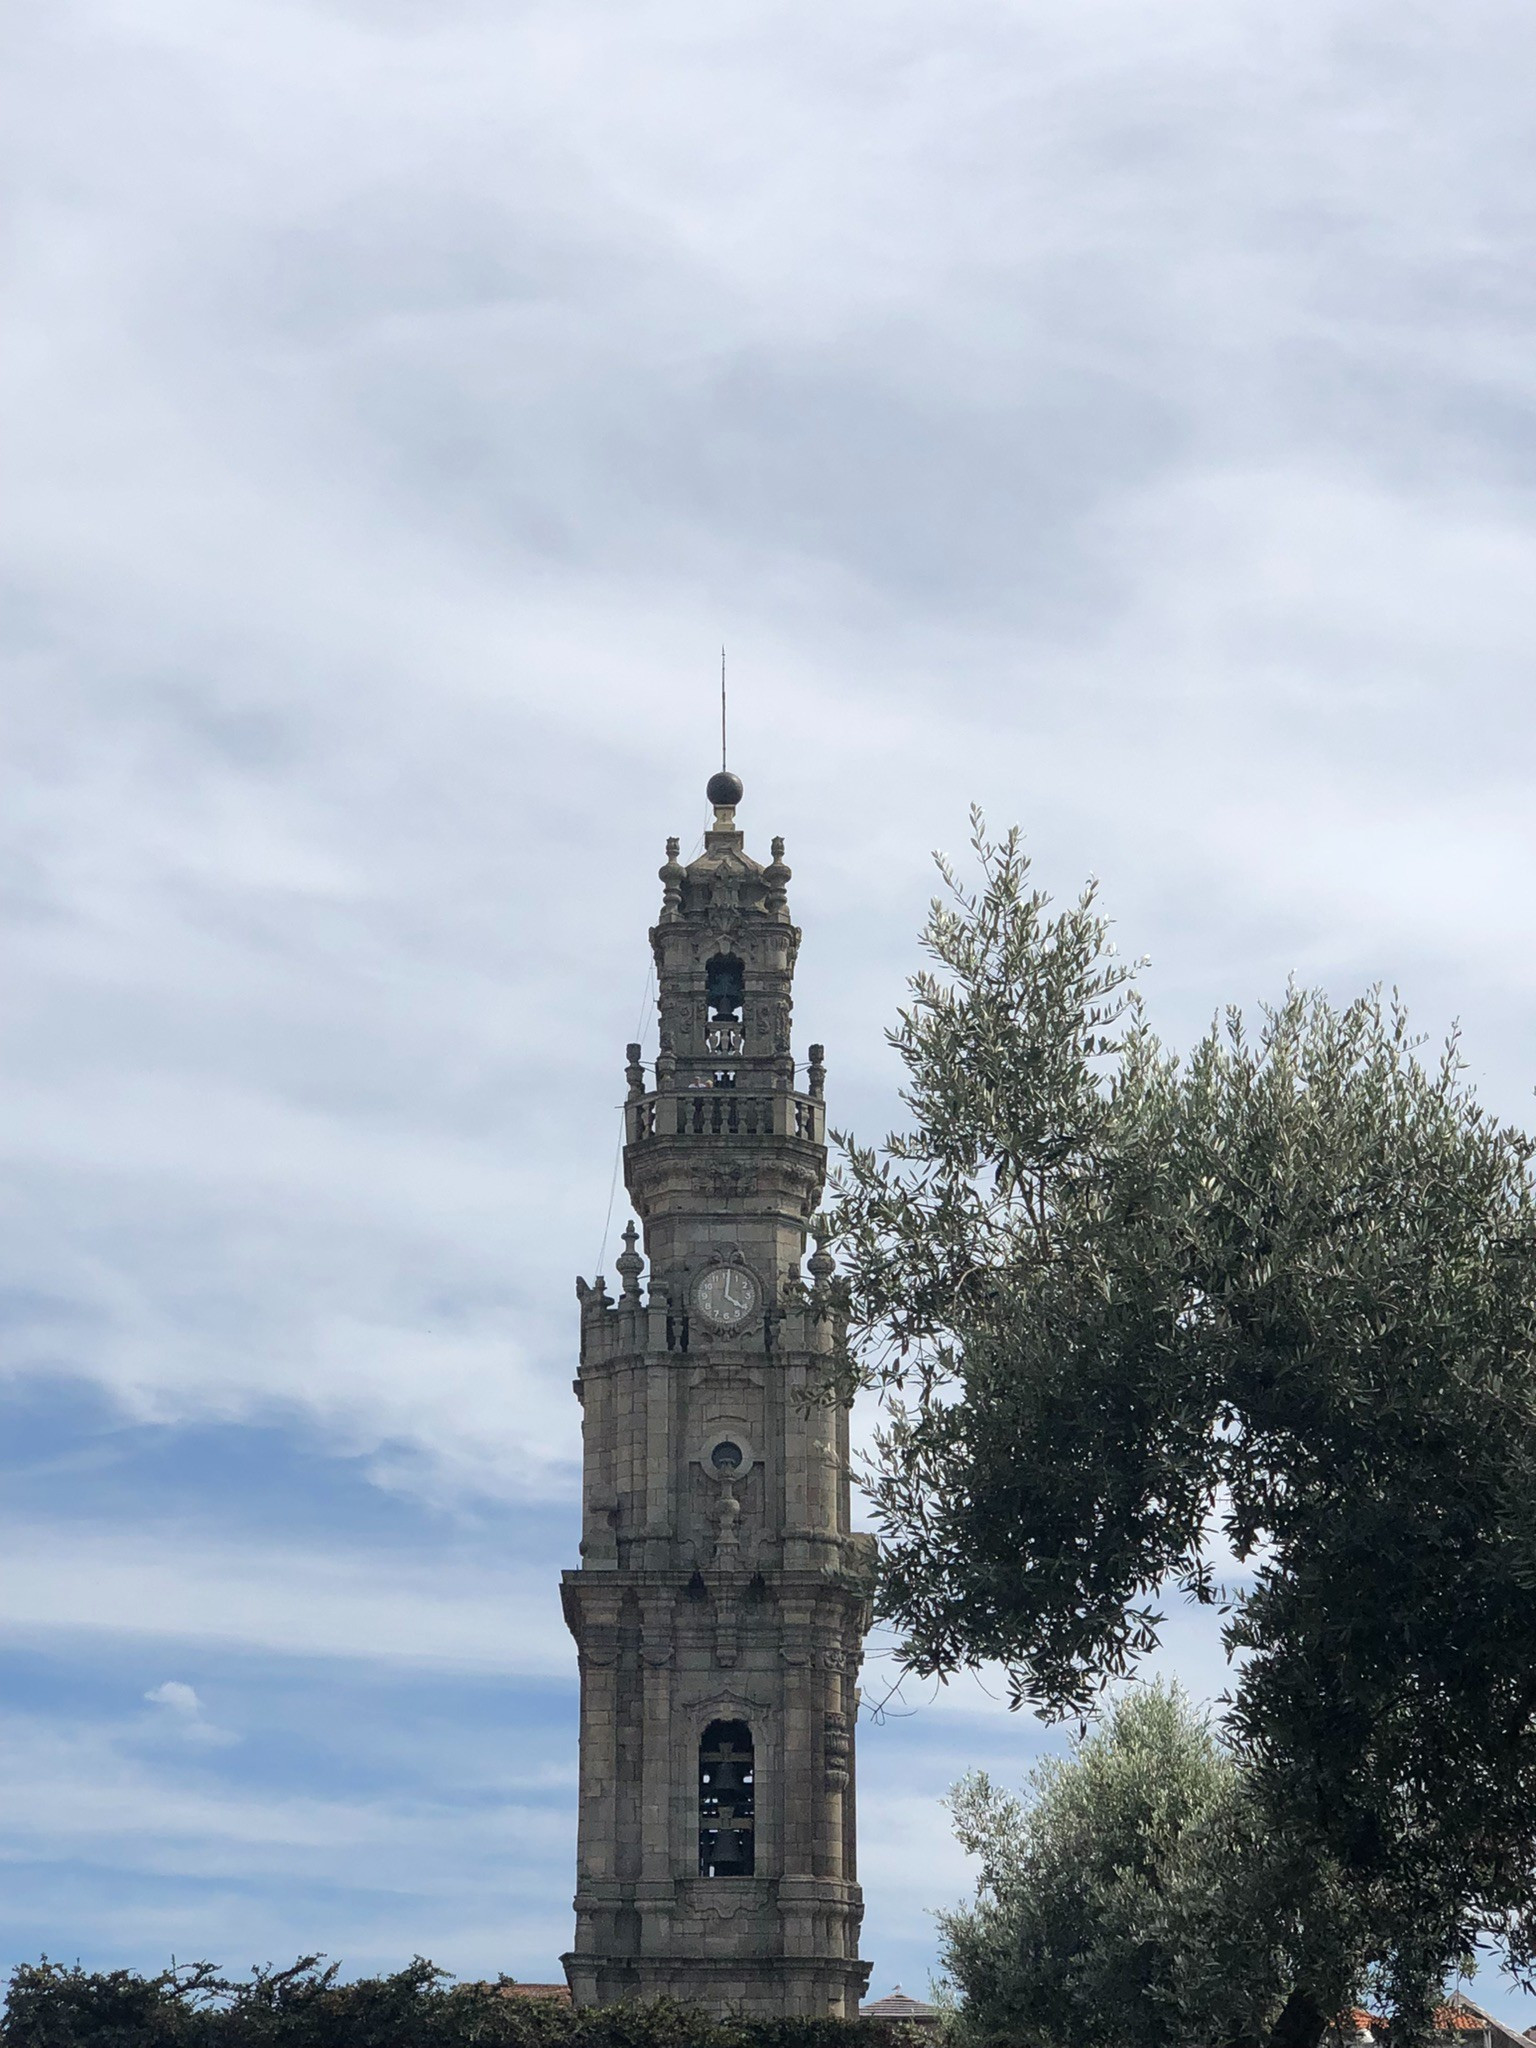 Clergyman tower - Clérigos tower, Portugal